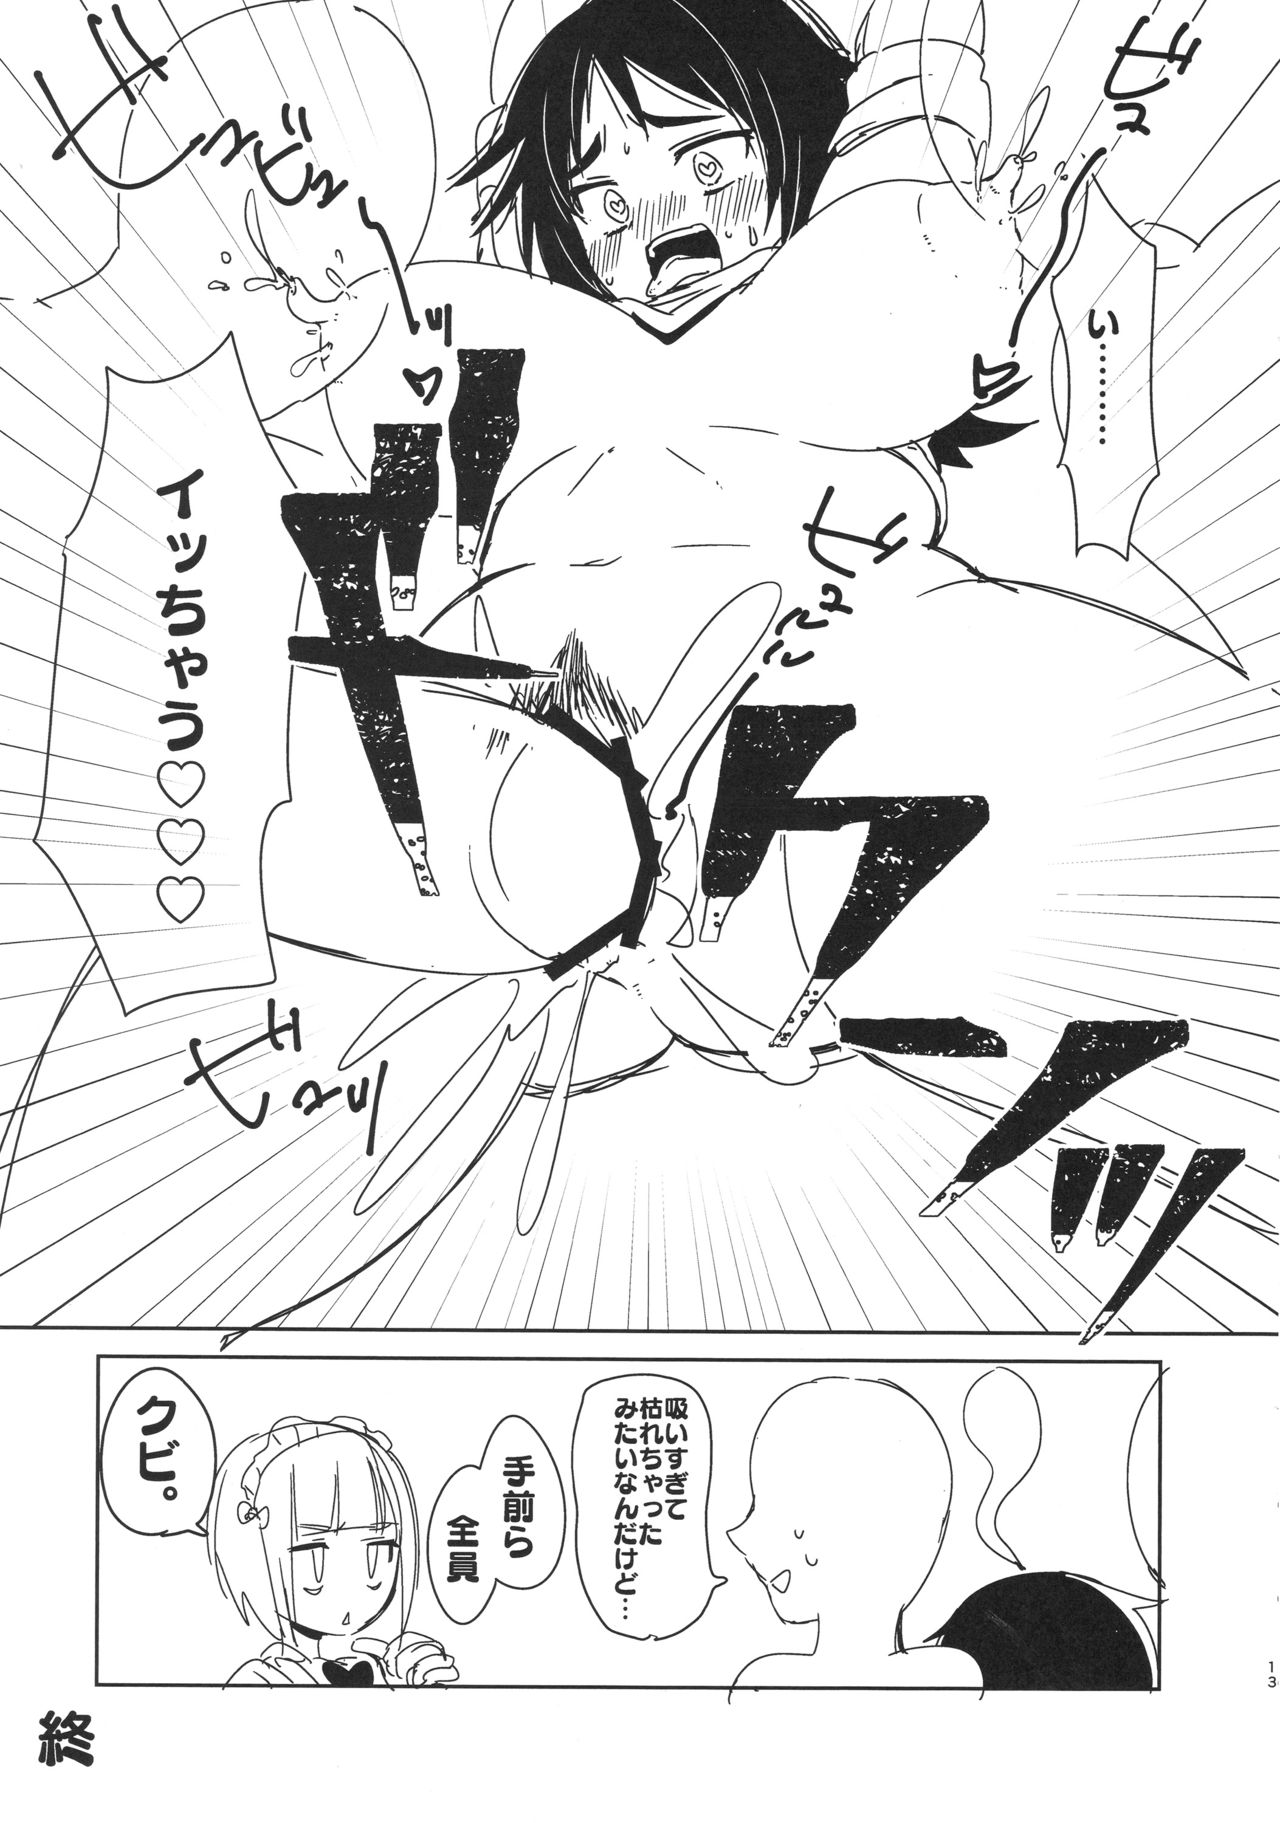 (Panzer Vor! 15) [Chabane Ninja (Happamushi)] Onii-san-tachi wa Koko de Murakami no Oppai demo Nondenasai yo (Girls und Panzer) (ぱんっあ☆ふぉー!15) [ちゃばねにんじゃ (はっぱむし)] お兄さんたちはここでムラカミのおっぱいでも飲んでなさいよ (ガールズ&パンツァー)